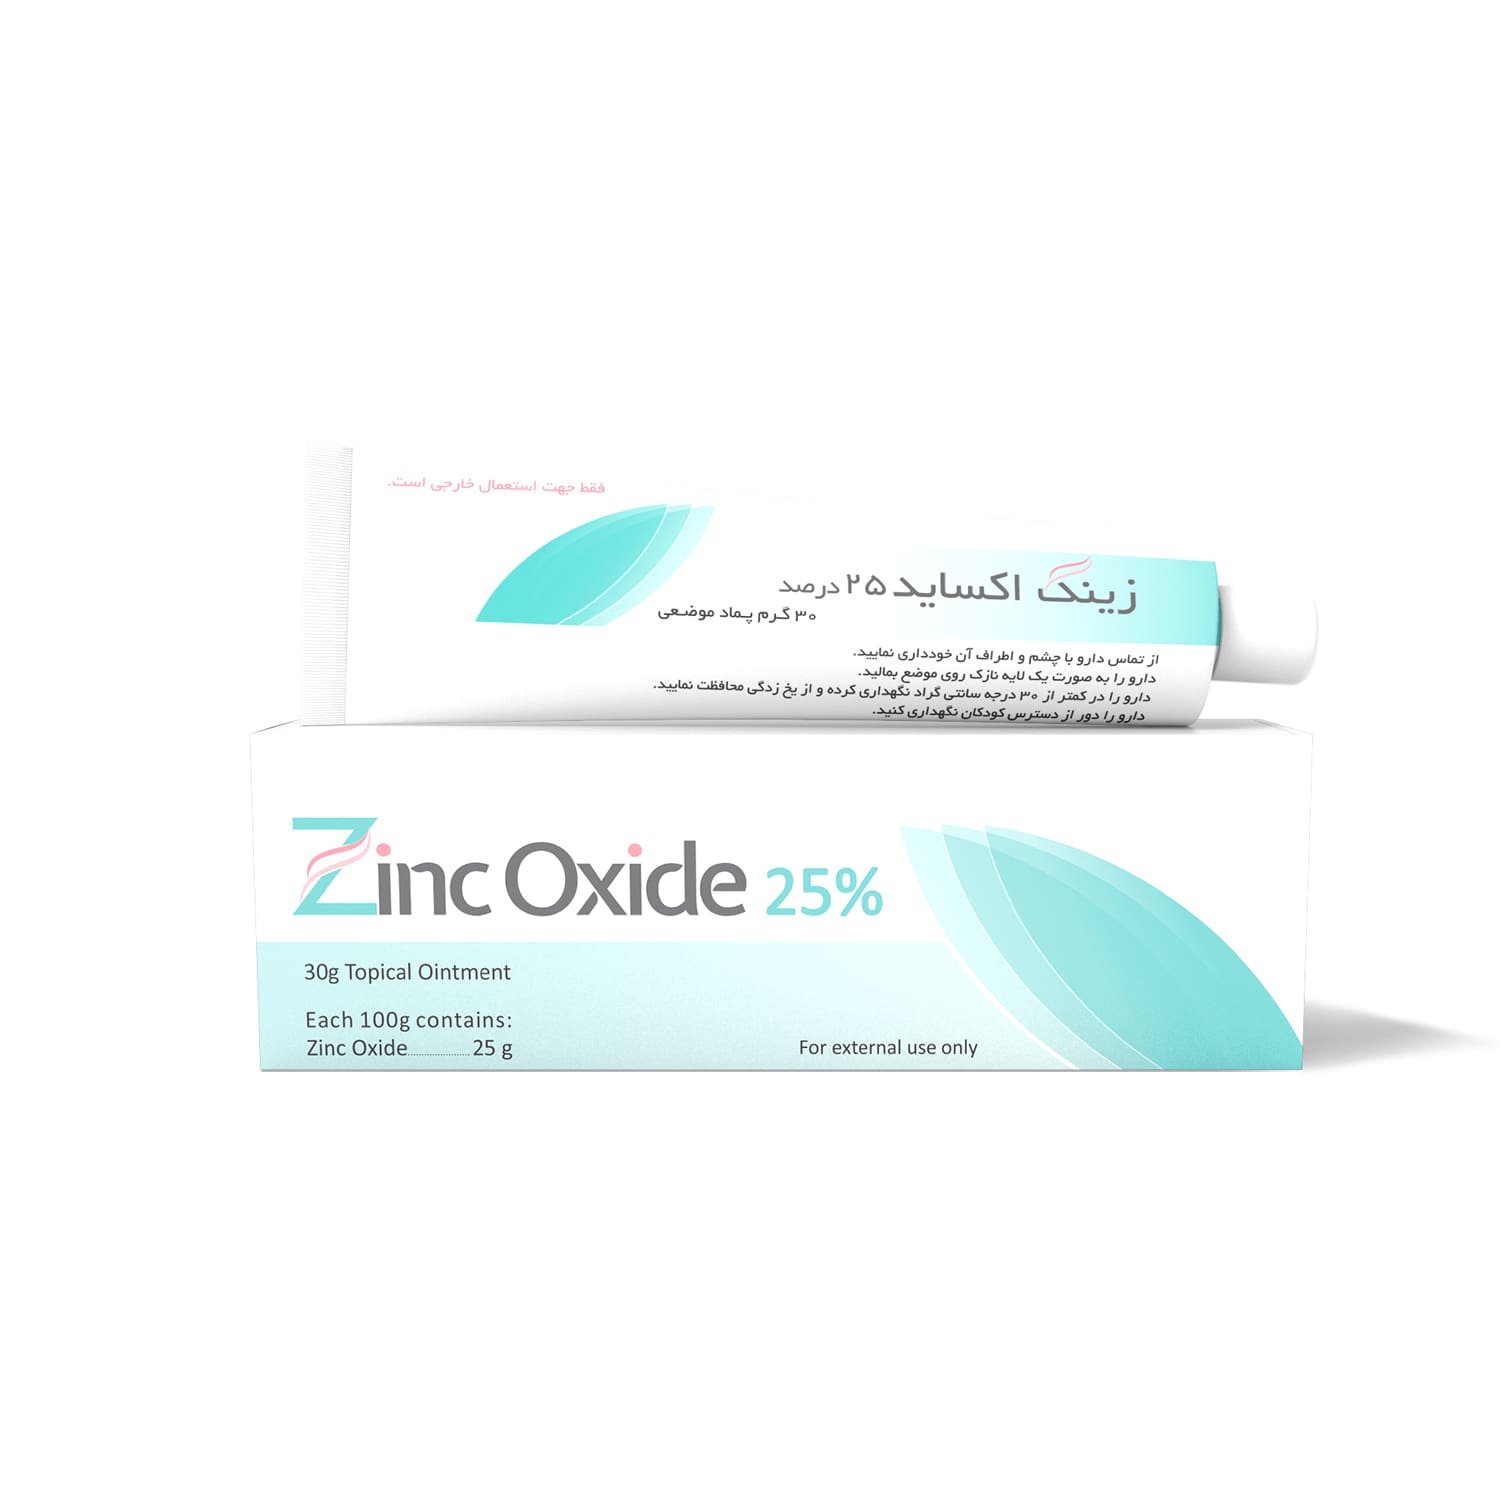 zinc-oxide-box-mockup-min-min